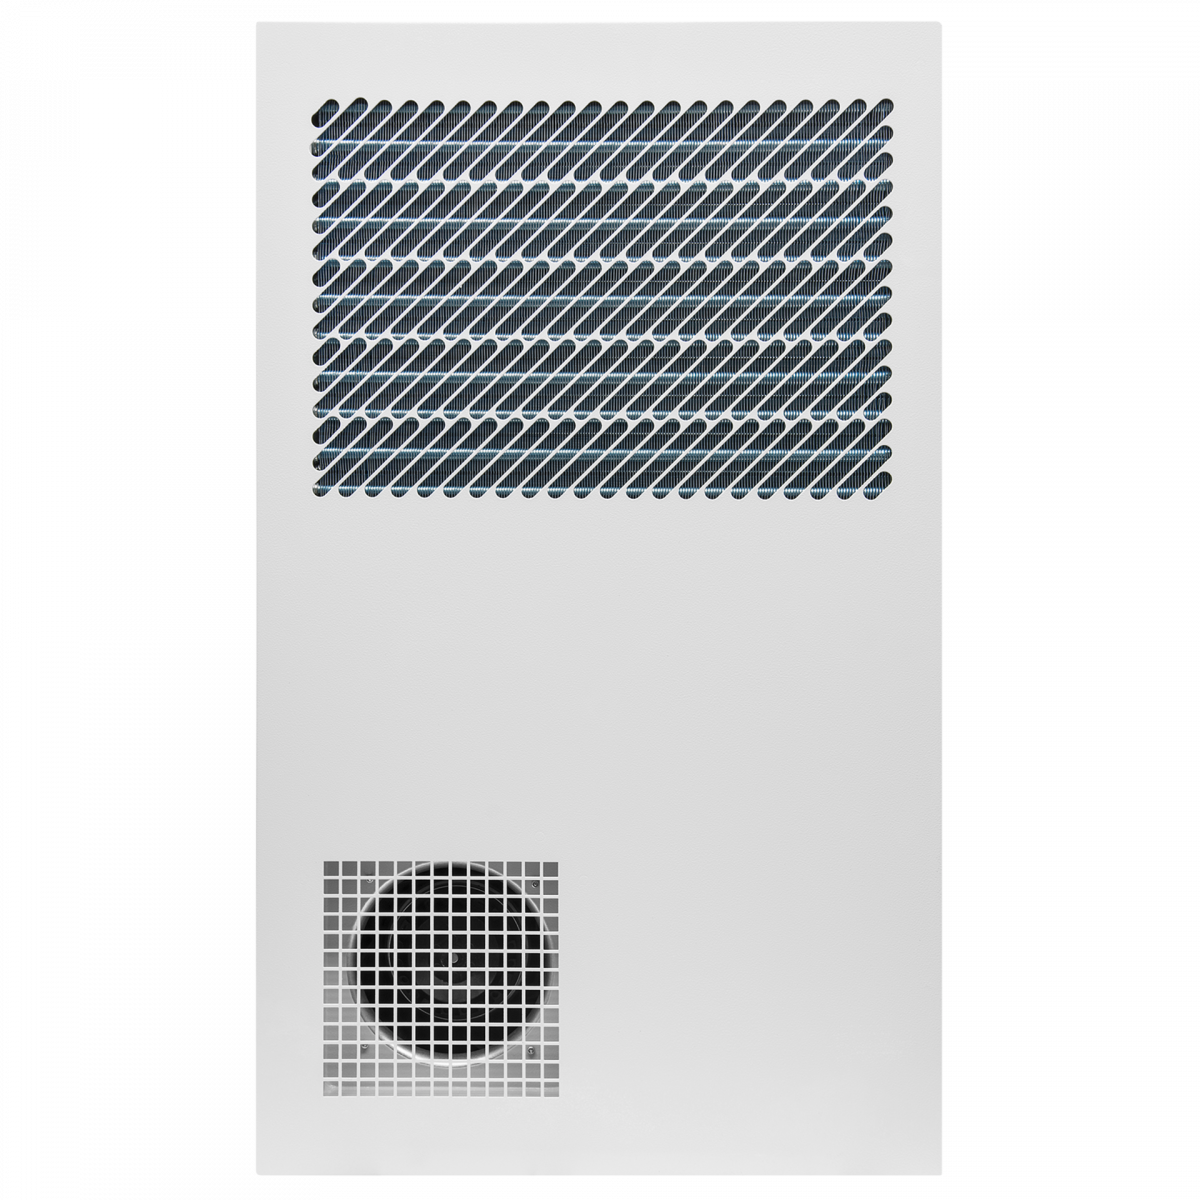 Кондиционер для установки в уличный шкаф, холодопроизводительность 1500Вт, со встроенным электрическим калорифером, 220В переменного тока (уценка)